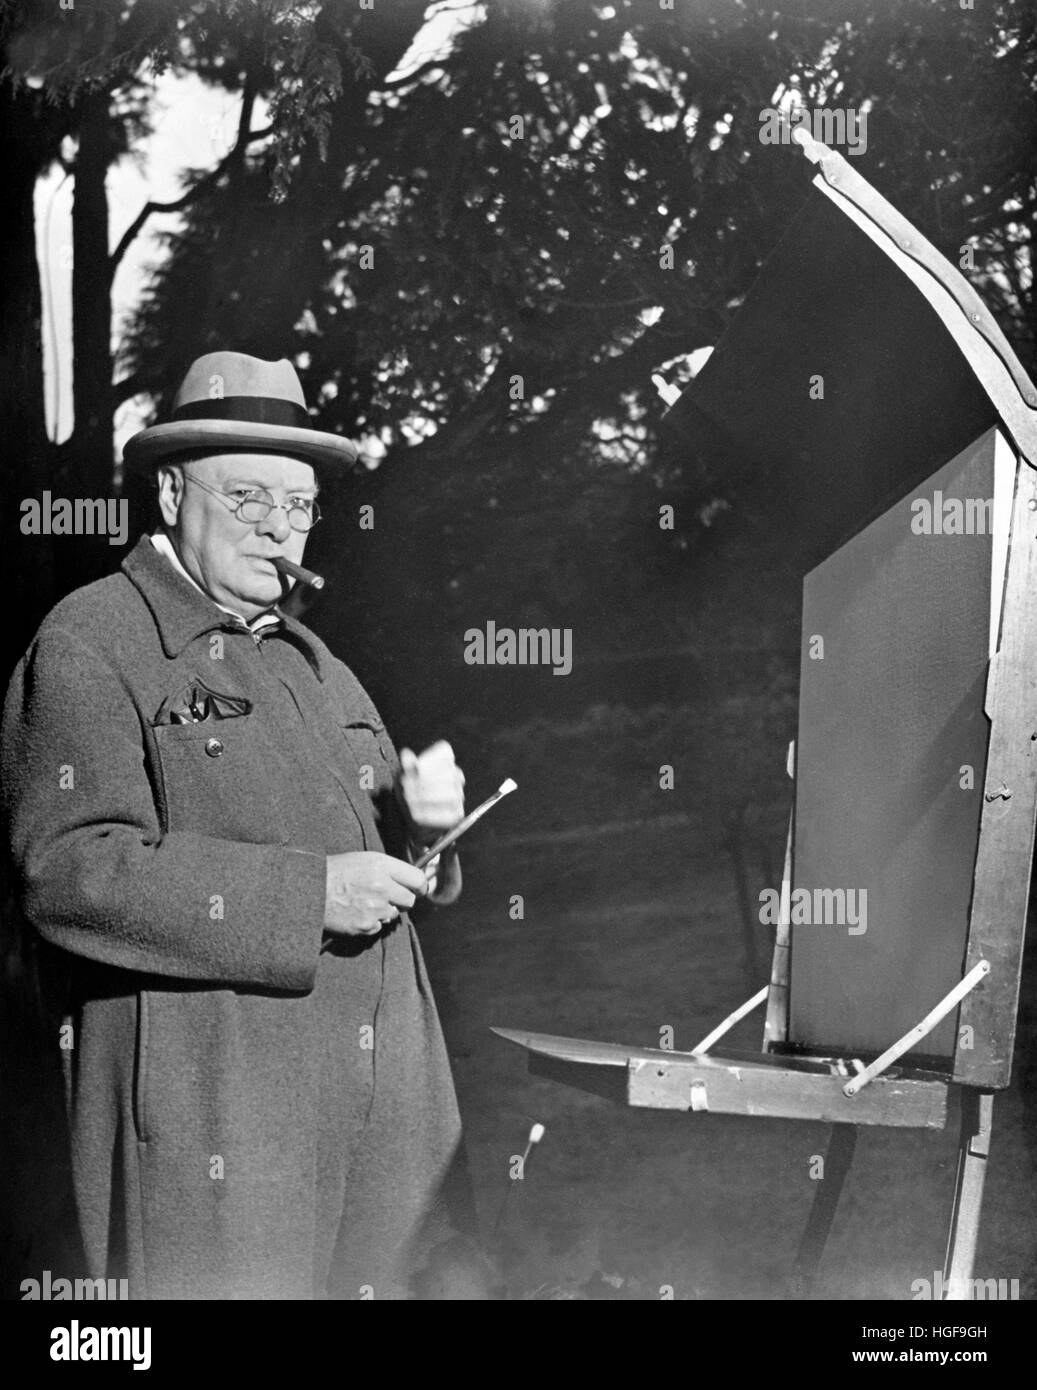 Winston Churchill travaillant sur une peinture avec des pinceaux, un chevalet et de l'équipement de peinture. Chartwell 1946 Banque D'Images